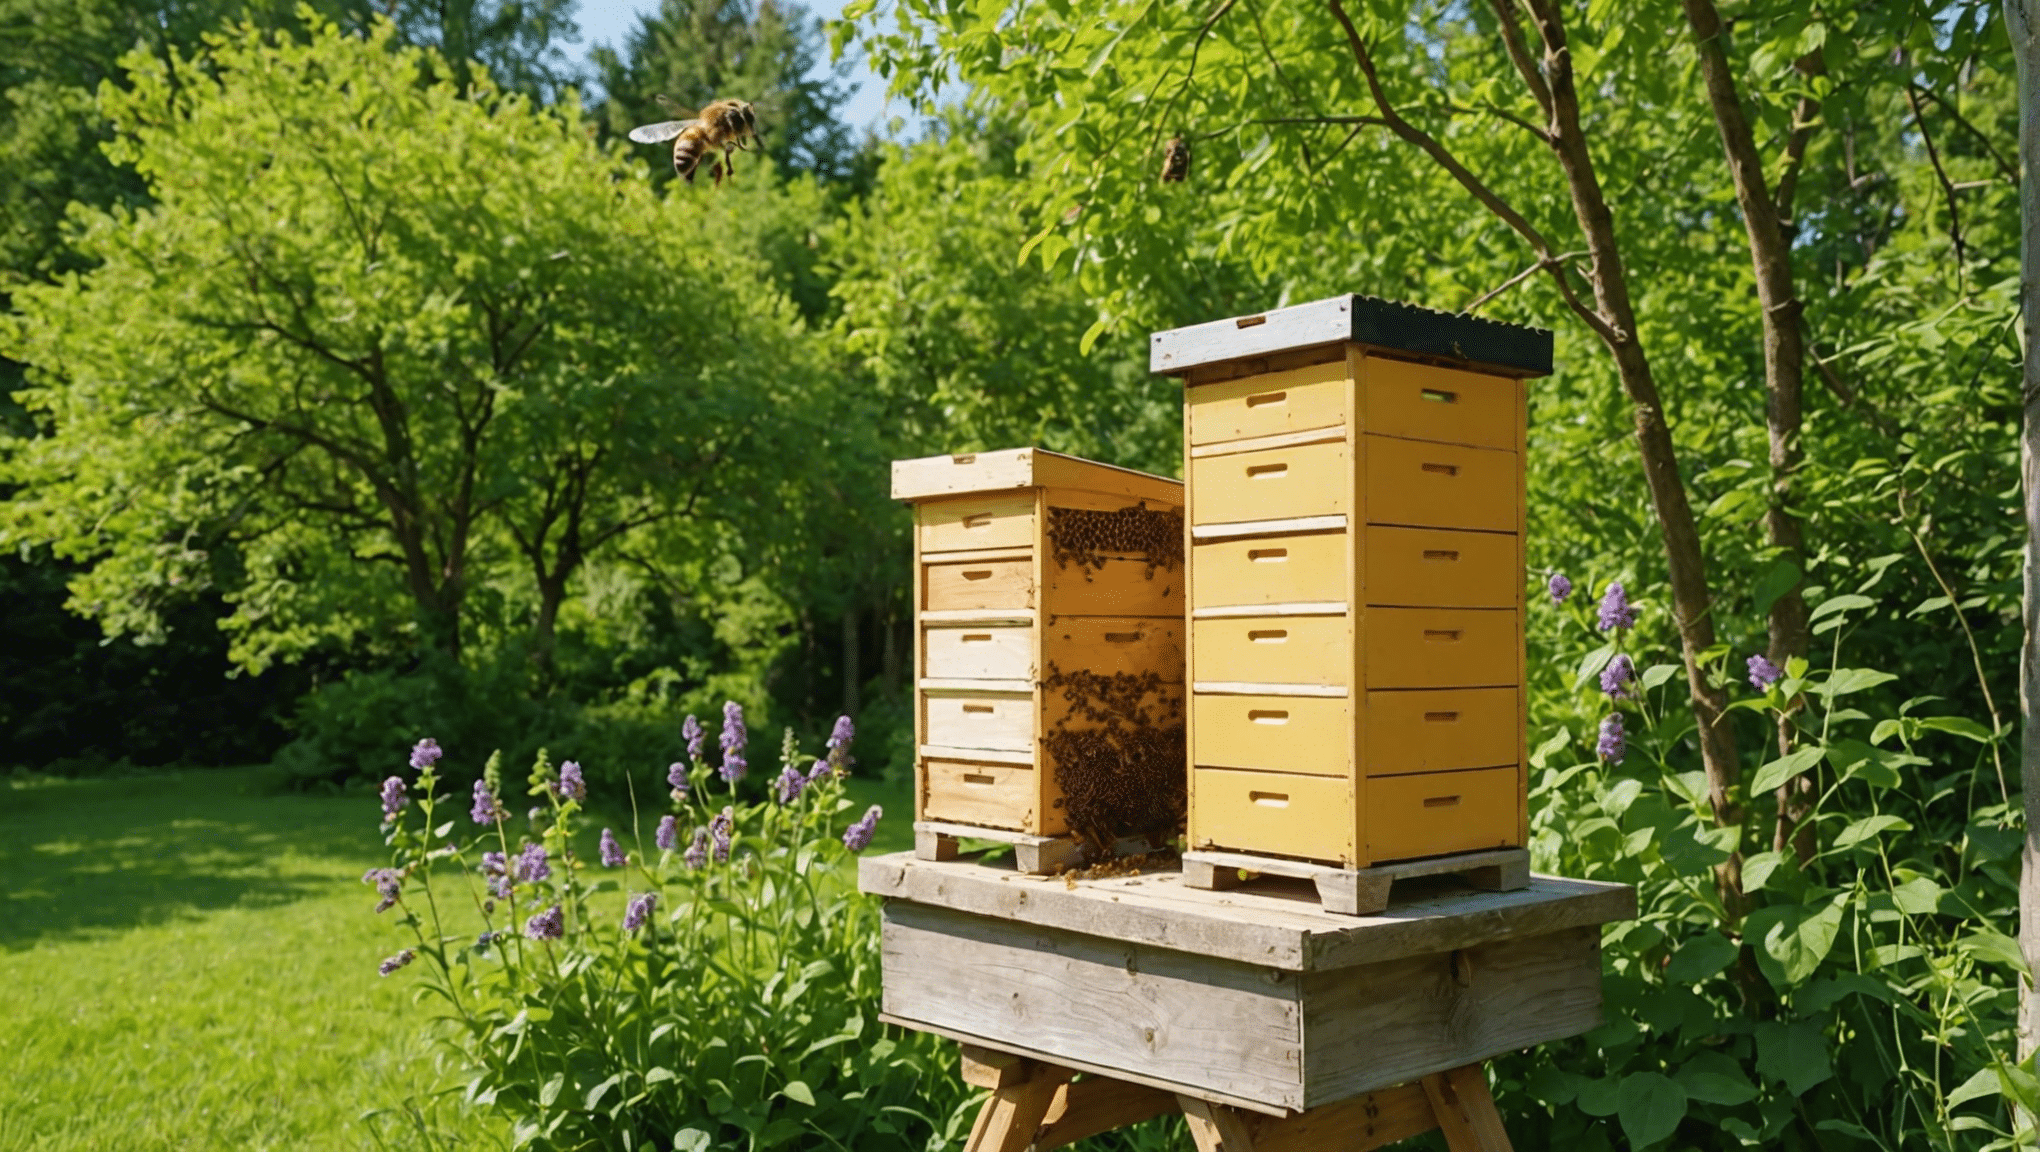 W tym obszernym przewodniku znajdziesz wszystko, co musisz wiedzieć o naturalnych ulach pszczół miodnych, w tym o tym, jak są wykonane, jakie korzyści płyną z ich stosowania i jak o nie dbać.